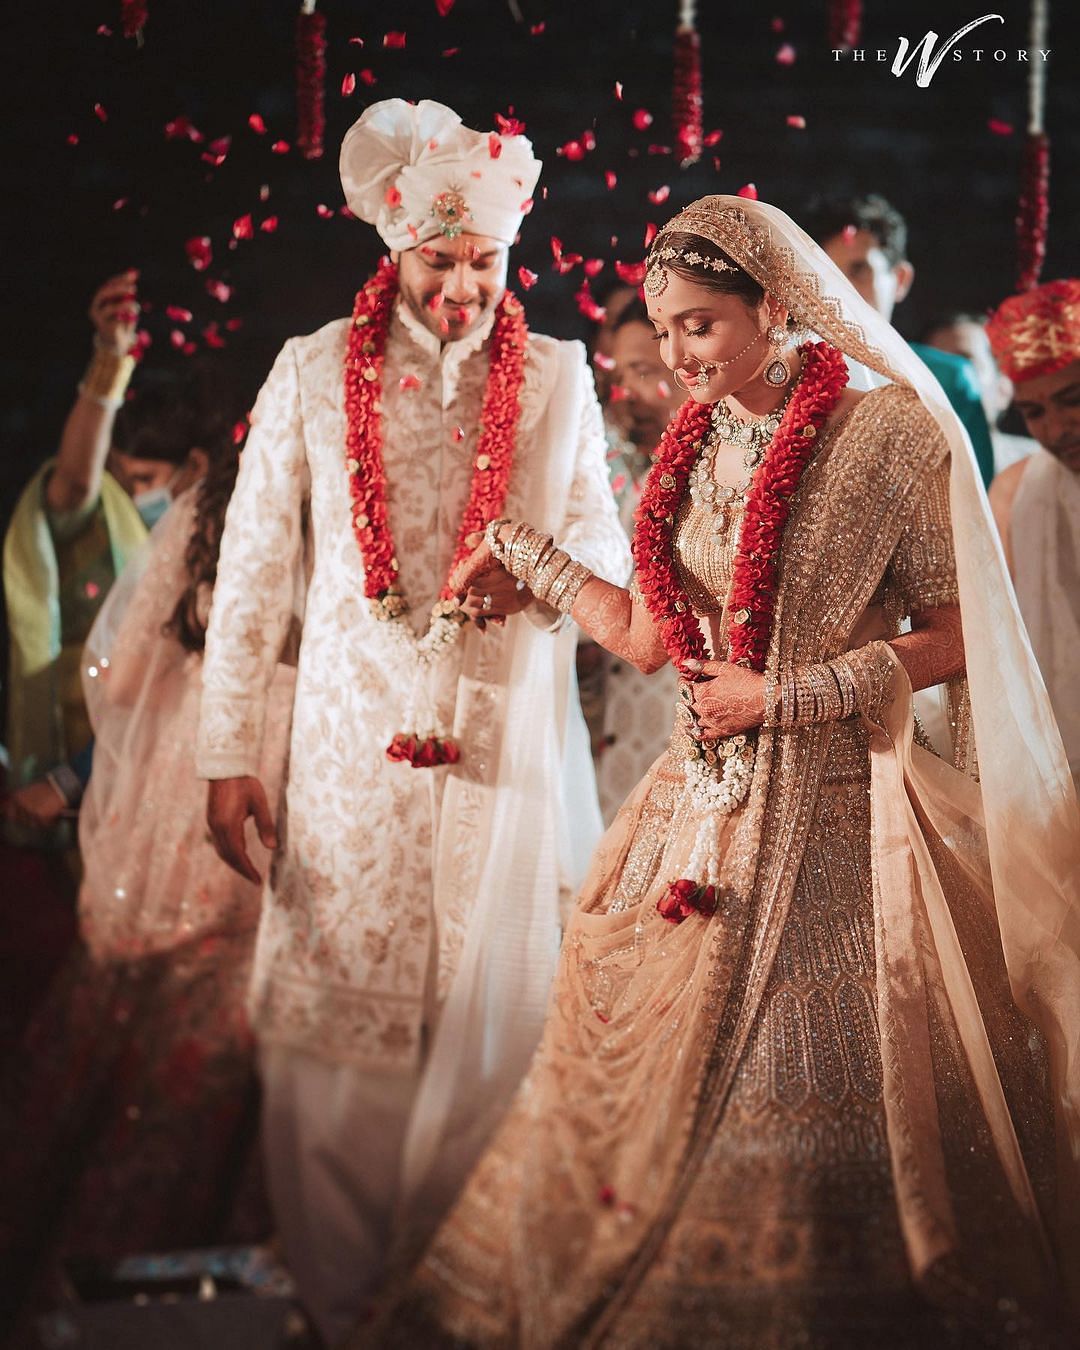 अंकिता लोखंडे ने 14 जून को मुंबई के एक होटल में अपने बॉयफ्रेंड विक्की जैन से शादी की.